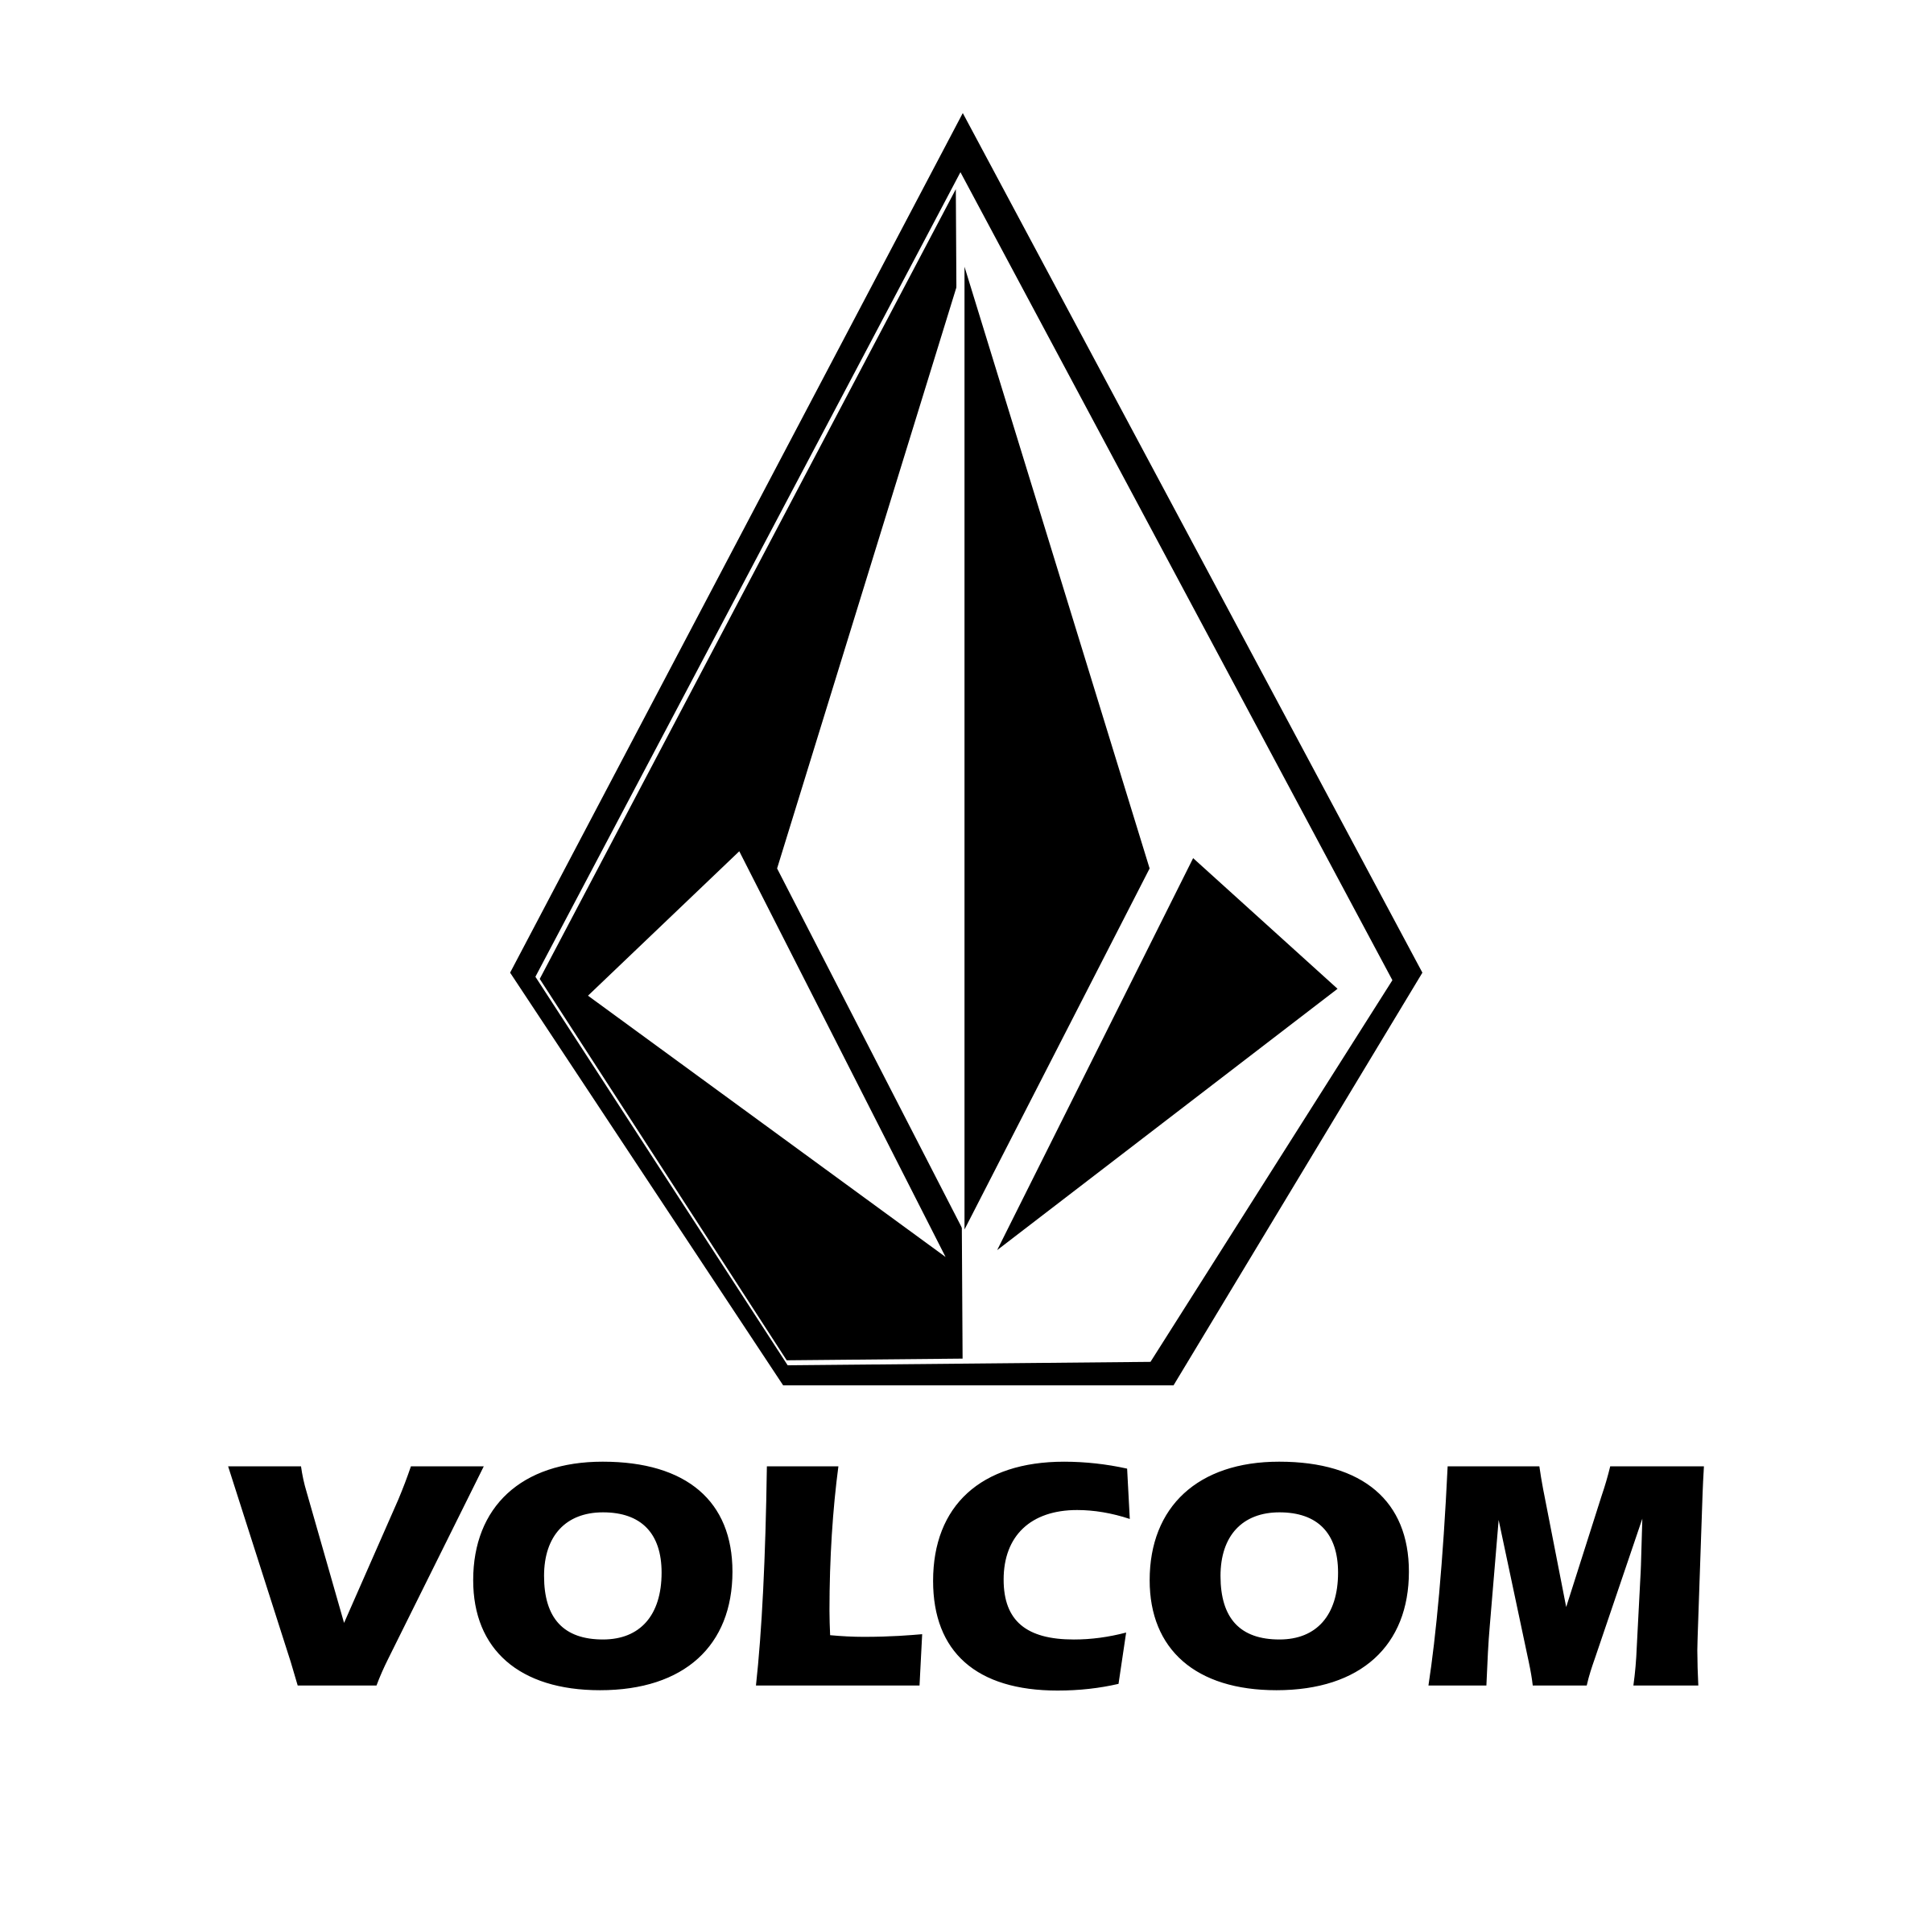 Volcom Logo - Volcom Logo PNG Transparent & SVG Vector